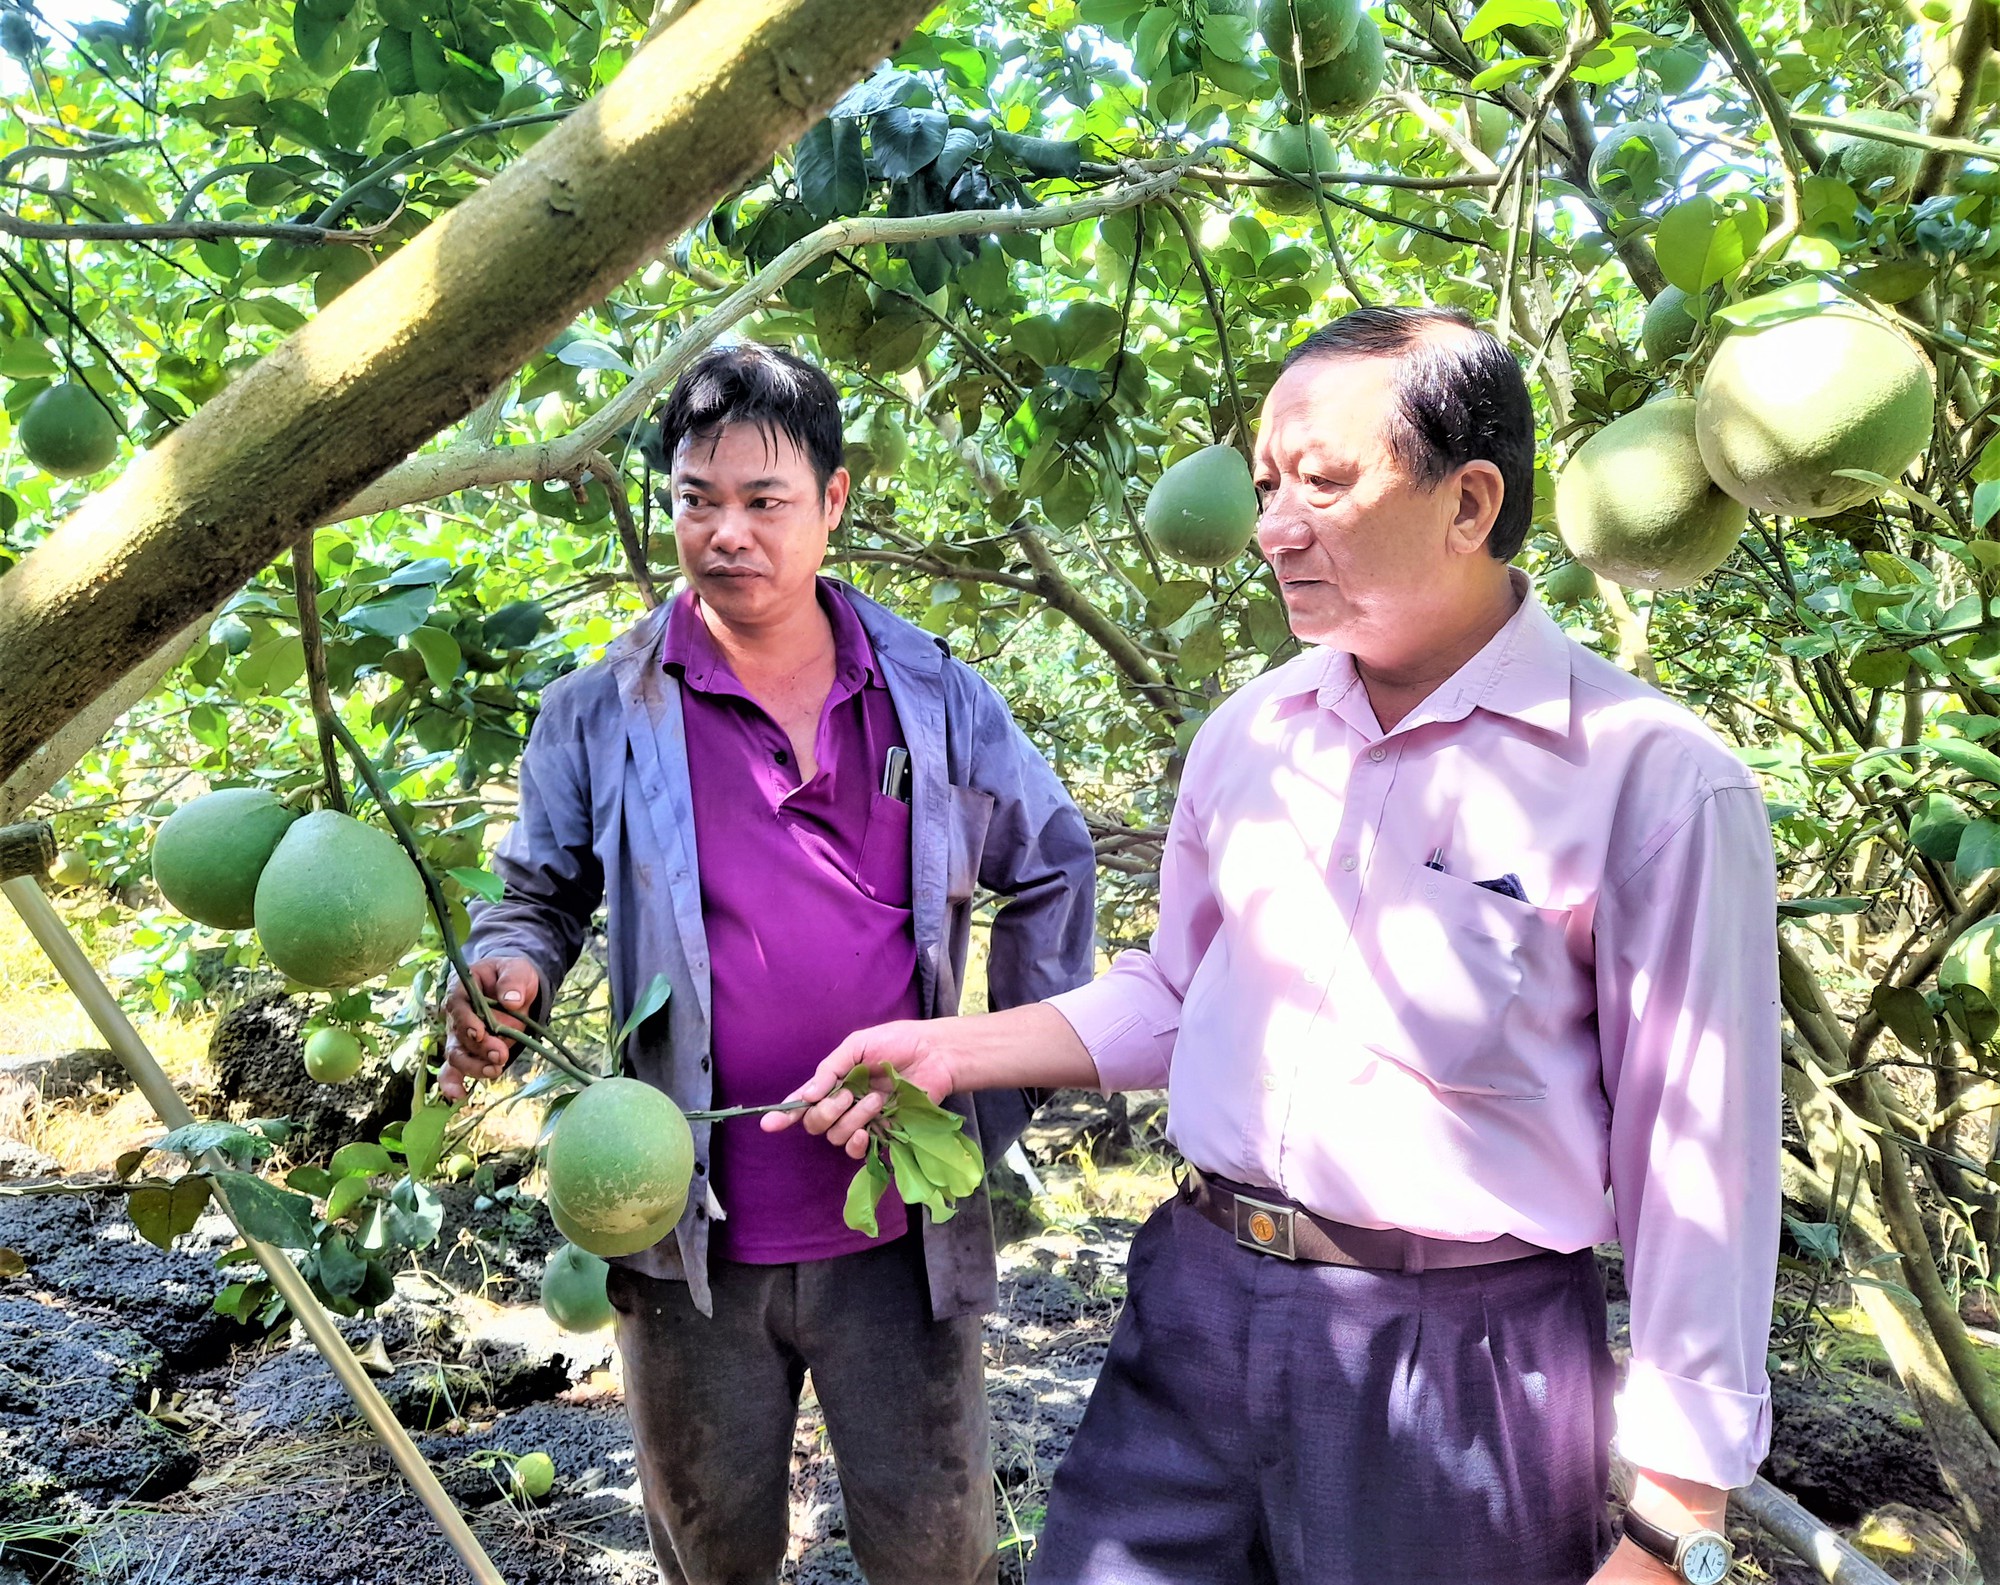 Vùng đất này ở Đồng Nai xưa nghèo rớt nay đổi đời nhờ trồng cây trái đặc sản, có nhà lời hơn 1 tỷ/năm - Ảnh 3.